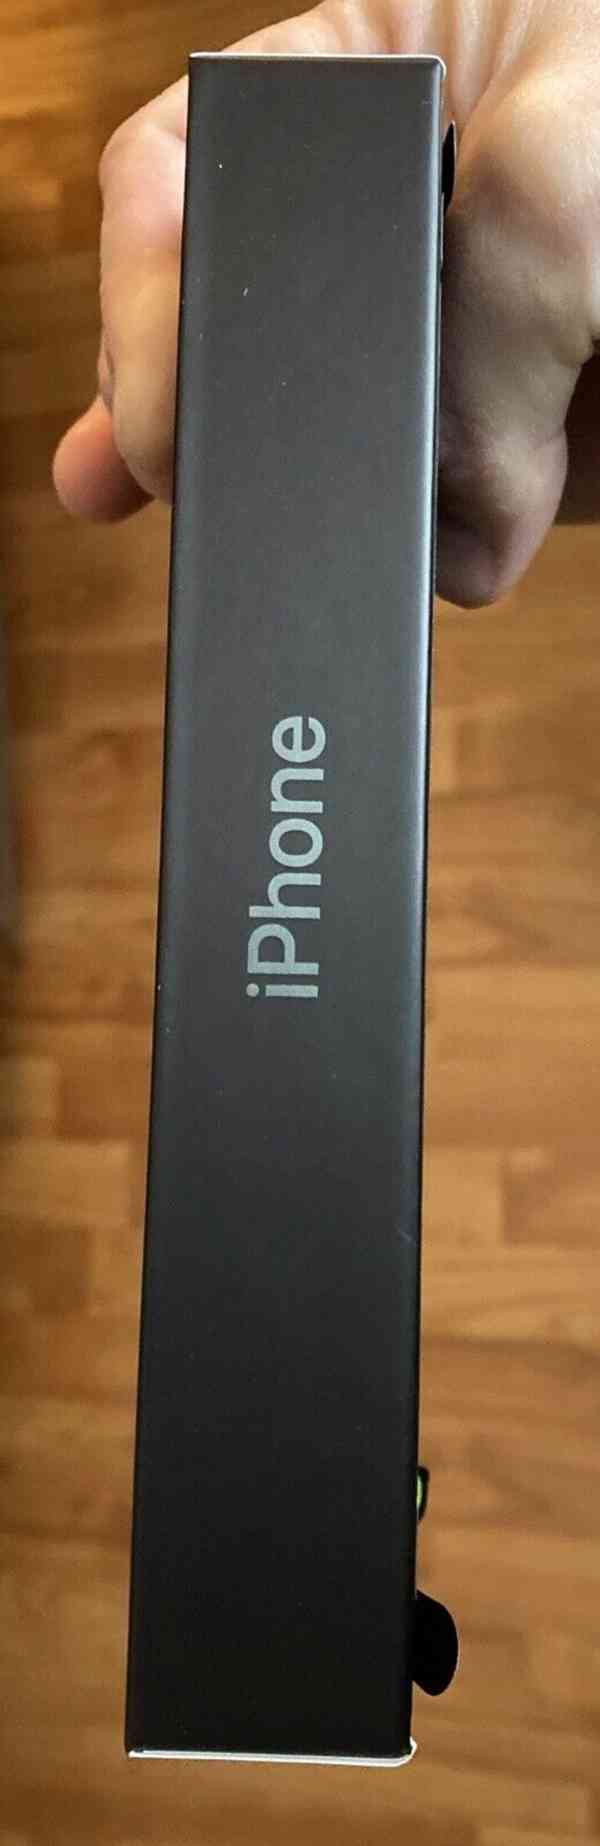 Apple iPhone 13 Pro Max 256GB Alpine Green odemčený NOVINKA - foto 6